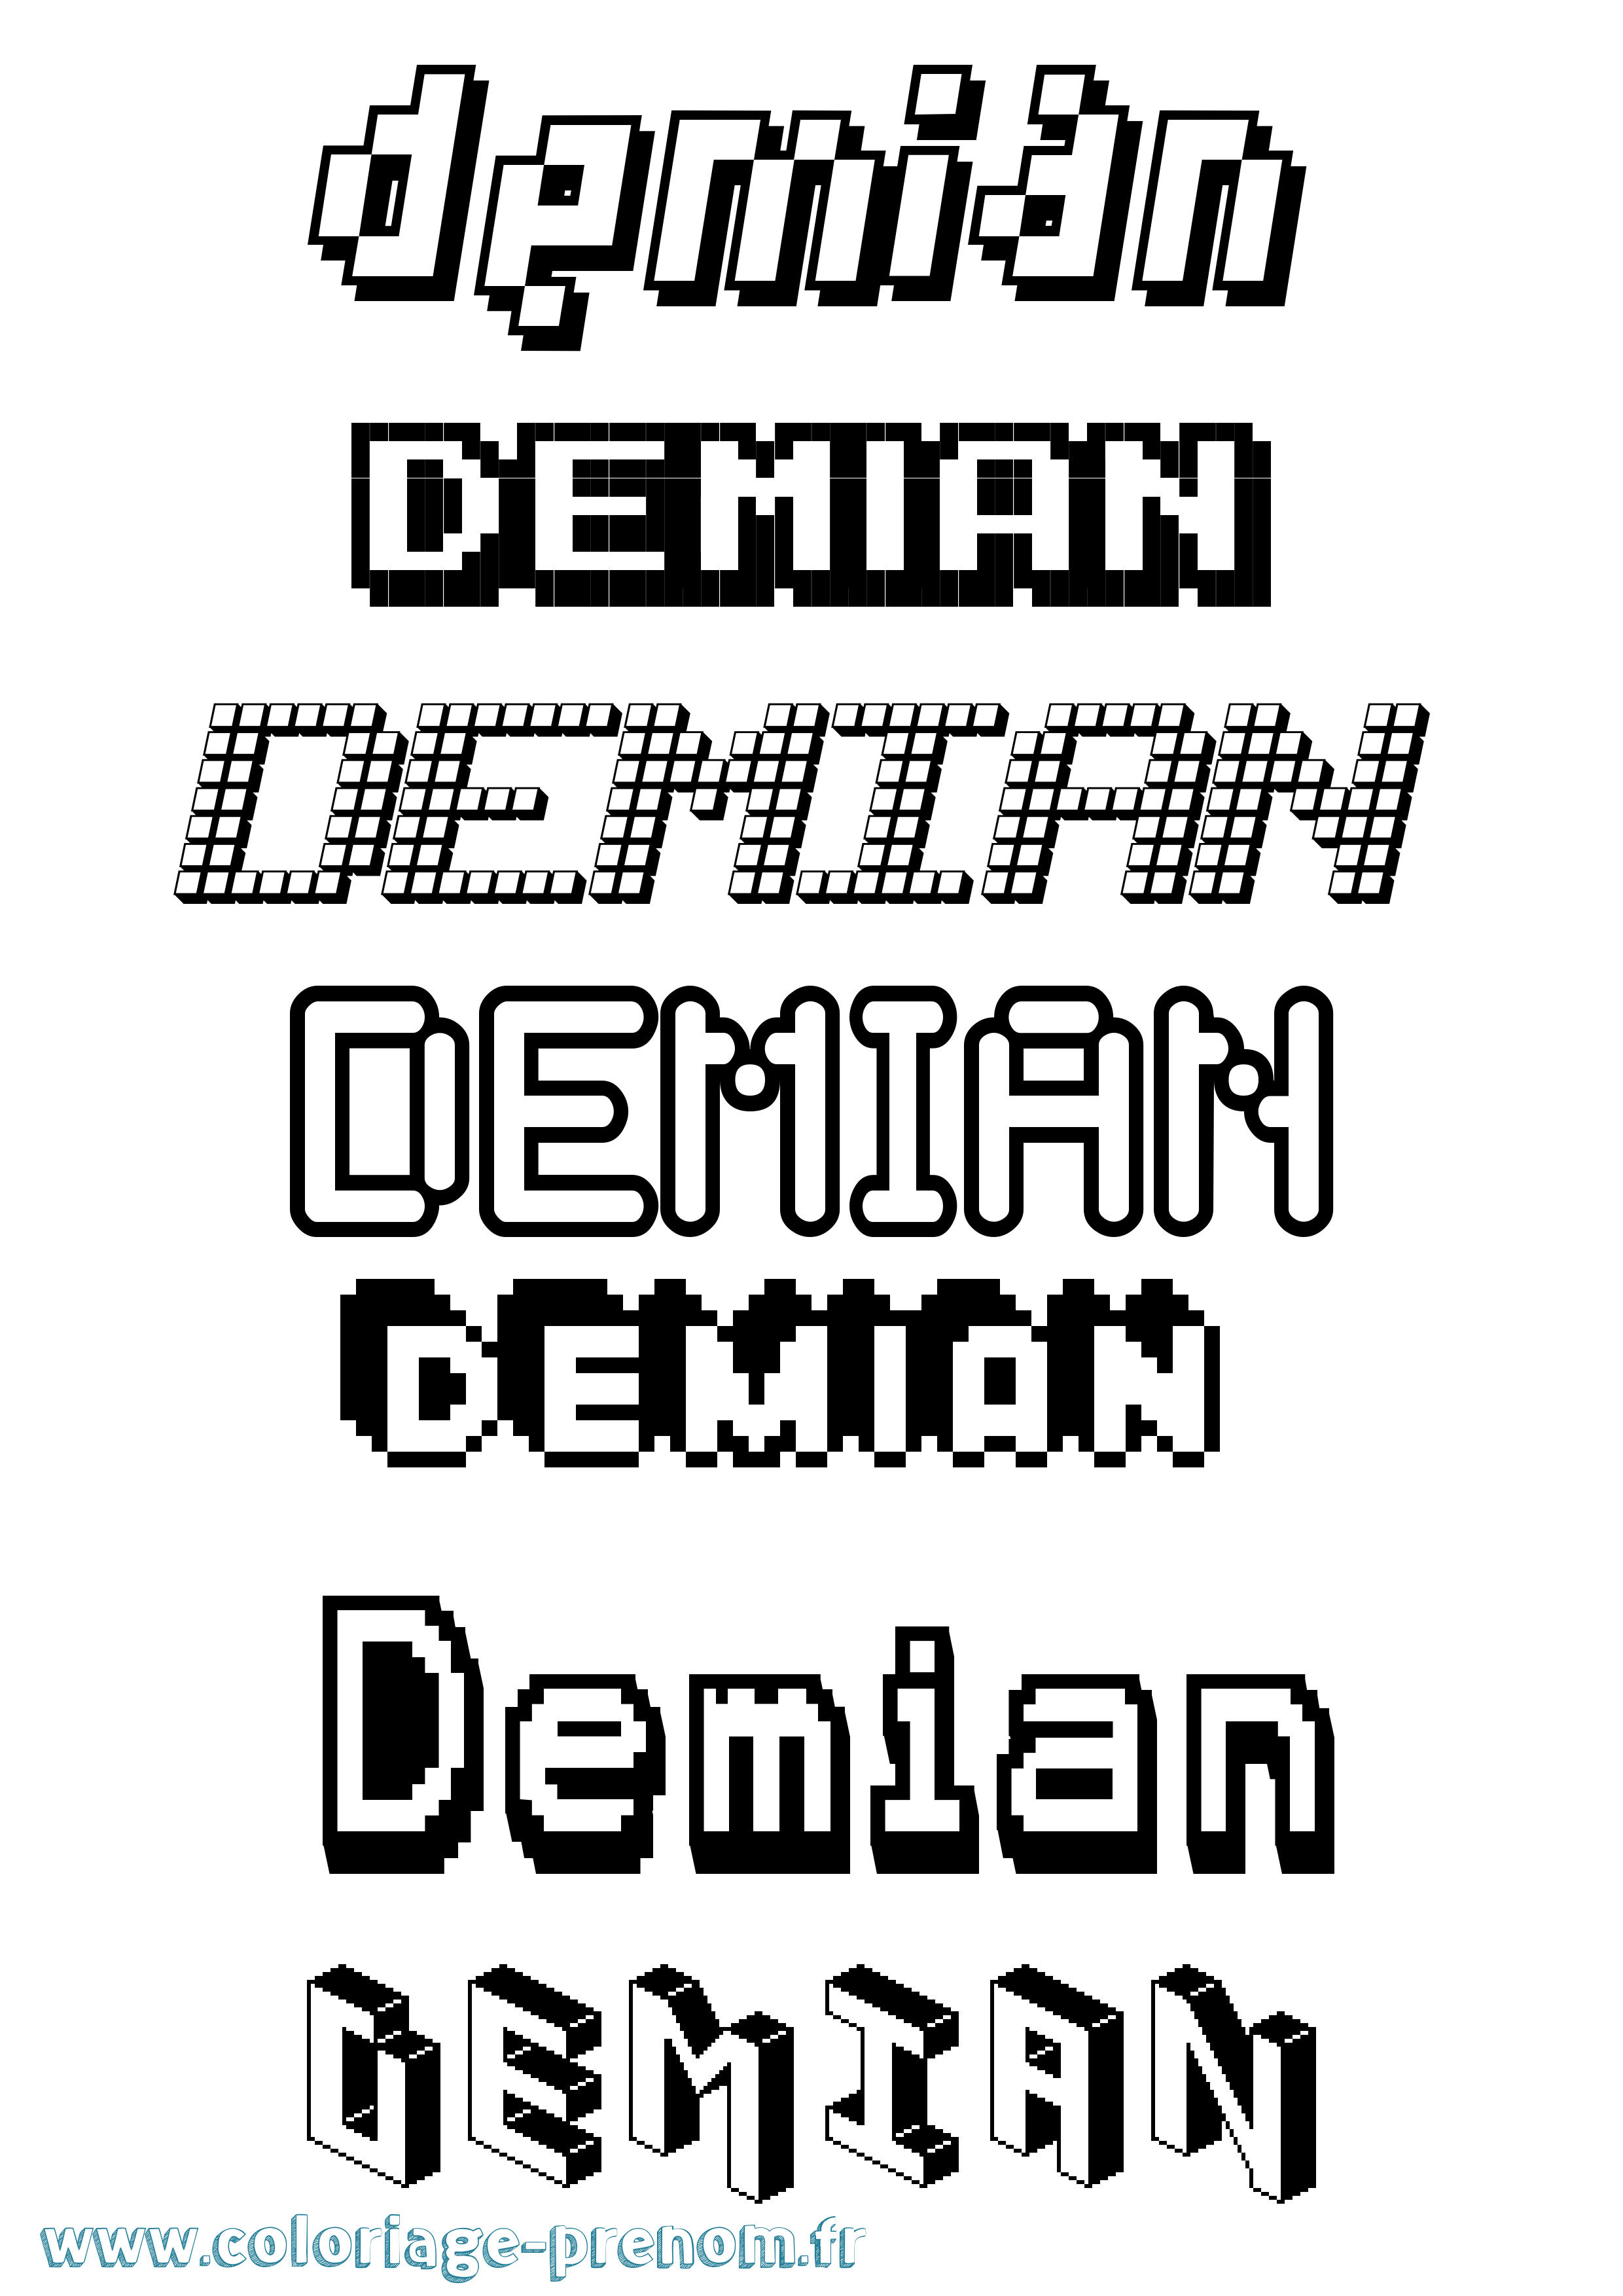 Coloriage prénom Demian Pixel